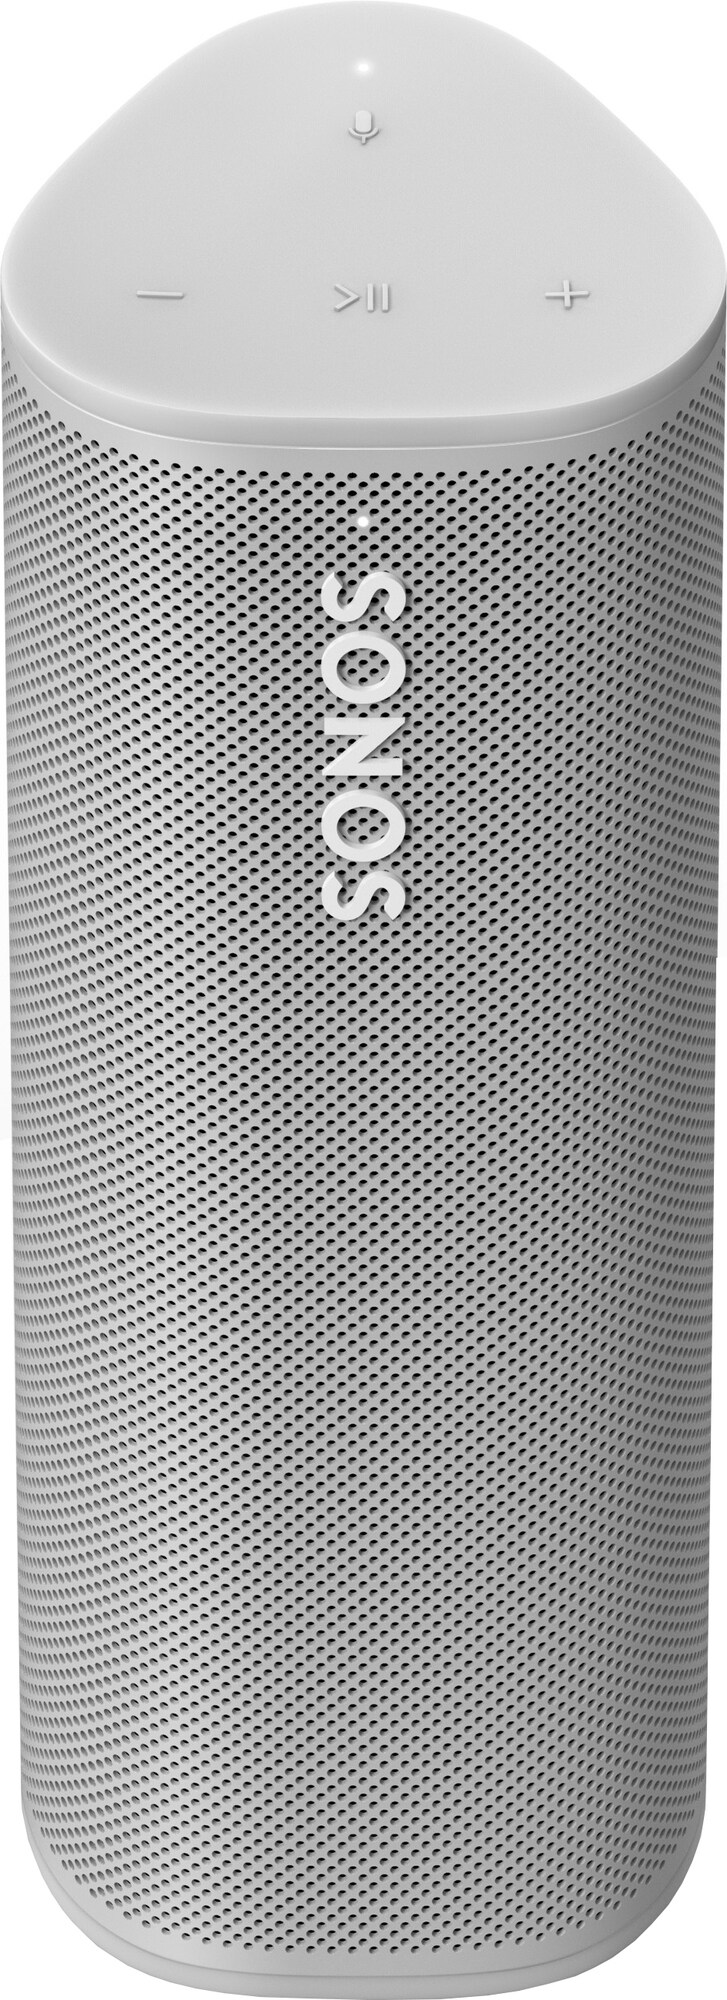 Sonos Roam bærbar trådløs høyttaler (lunar white) - Høyttalere - Elkjøp